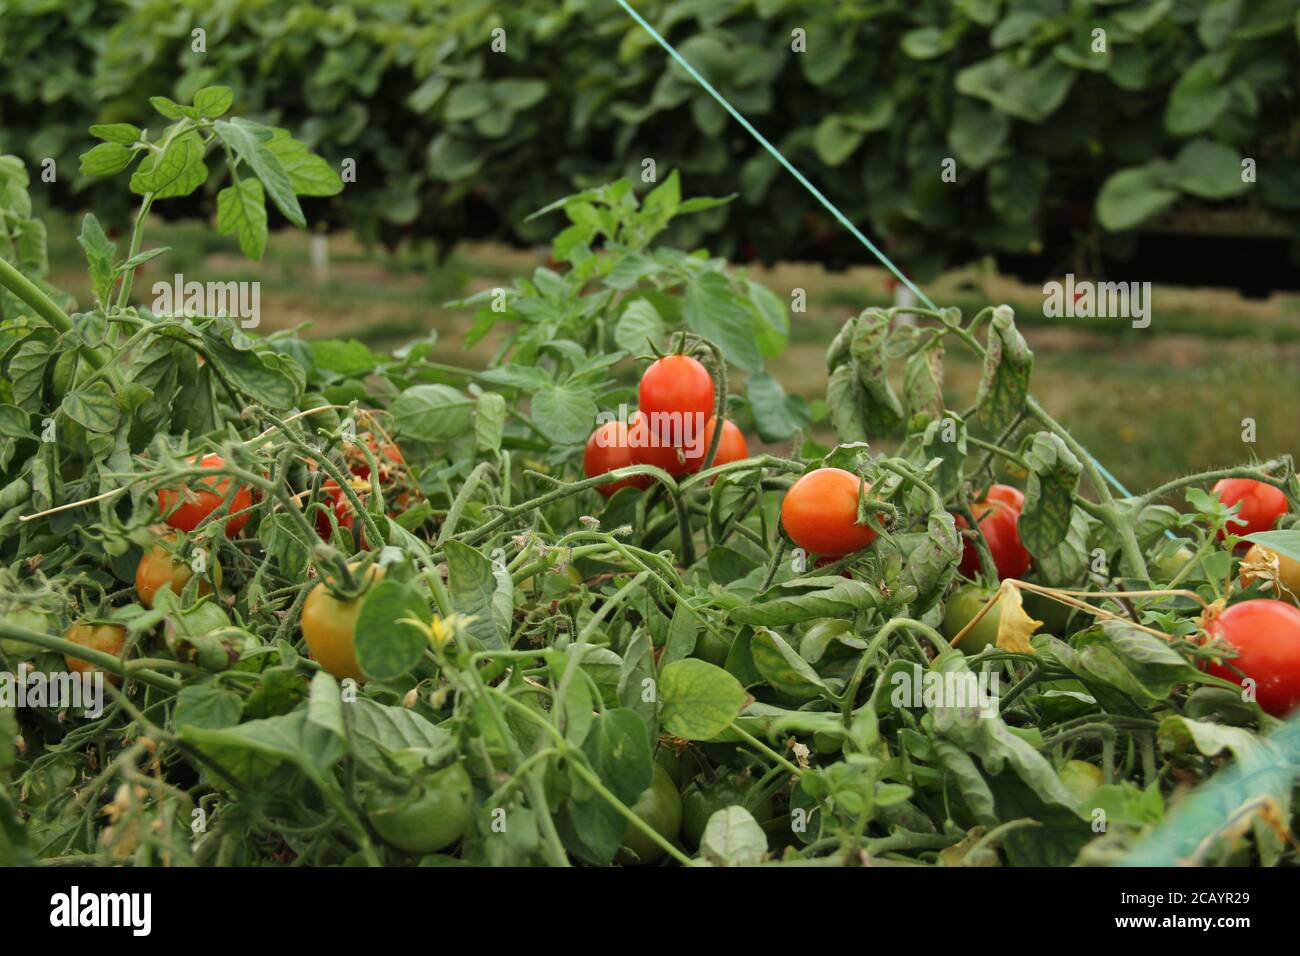 Enfield, Royaume-Uni. 8 août 2020. Une vue sur les tomates cerises mûres à la ferme Pick You Own.Pick Your Own Crop Farms est un « événement » d'été populaire au Royaume-Uni avec des gens qui vont cueillir des produits frais de ferme dans les fermes participantes. Crédit : David Mbiyu/SOPA Images/ZUMA Wire/Alay Live News Banque D'Images